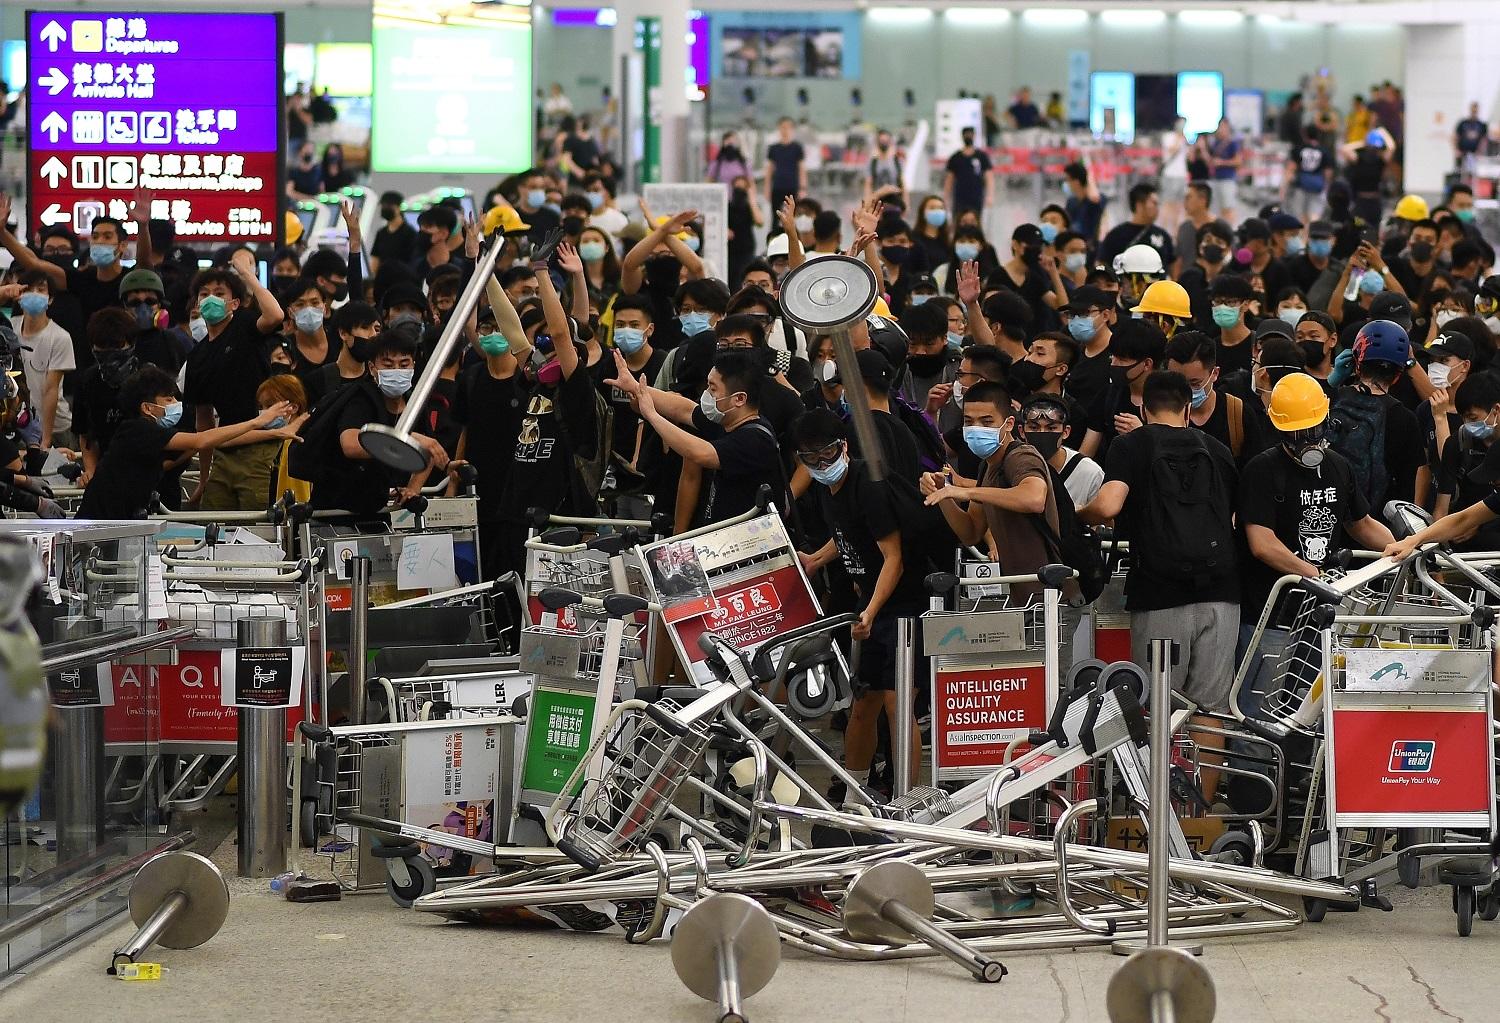 متظاهرون يغلقون مدخل بوابة في مطار هونغ كونغ الدولي، 13 آب/ أغسطس 2019. (أ ف ب) 